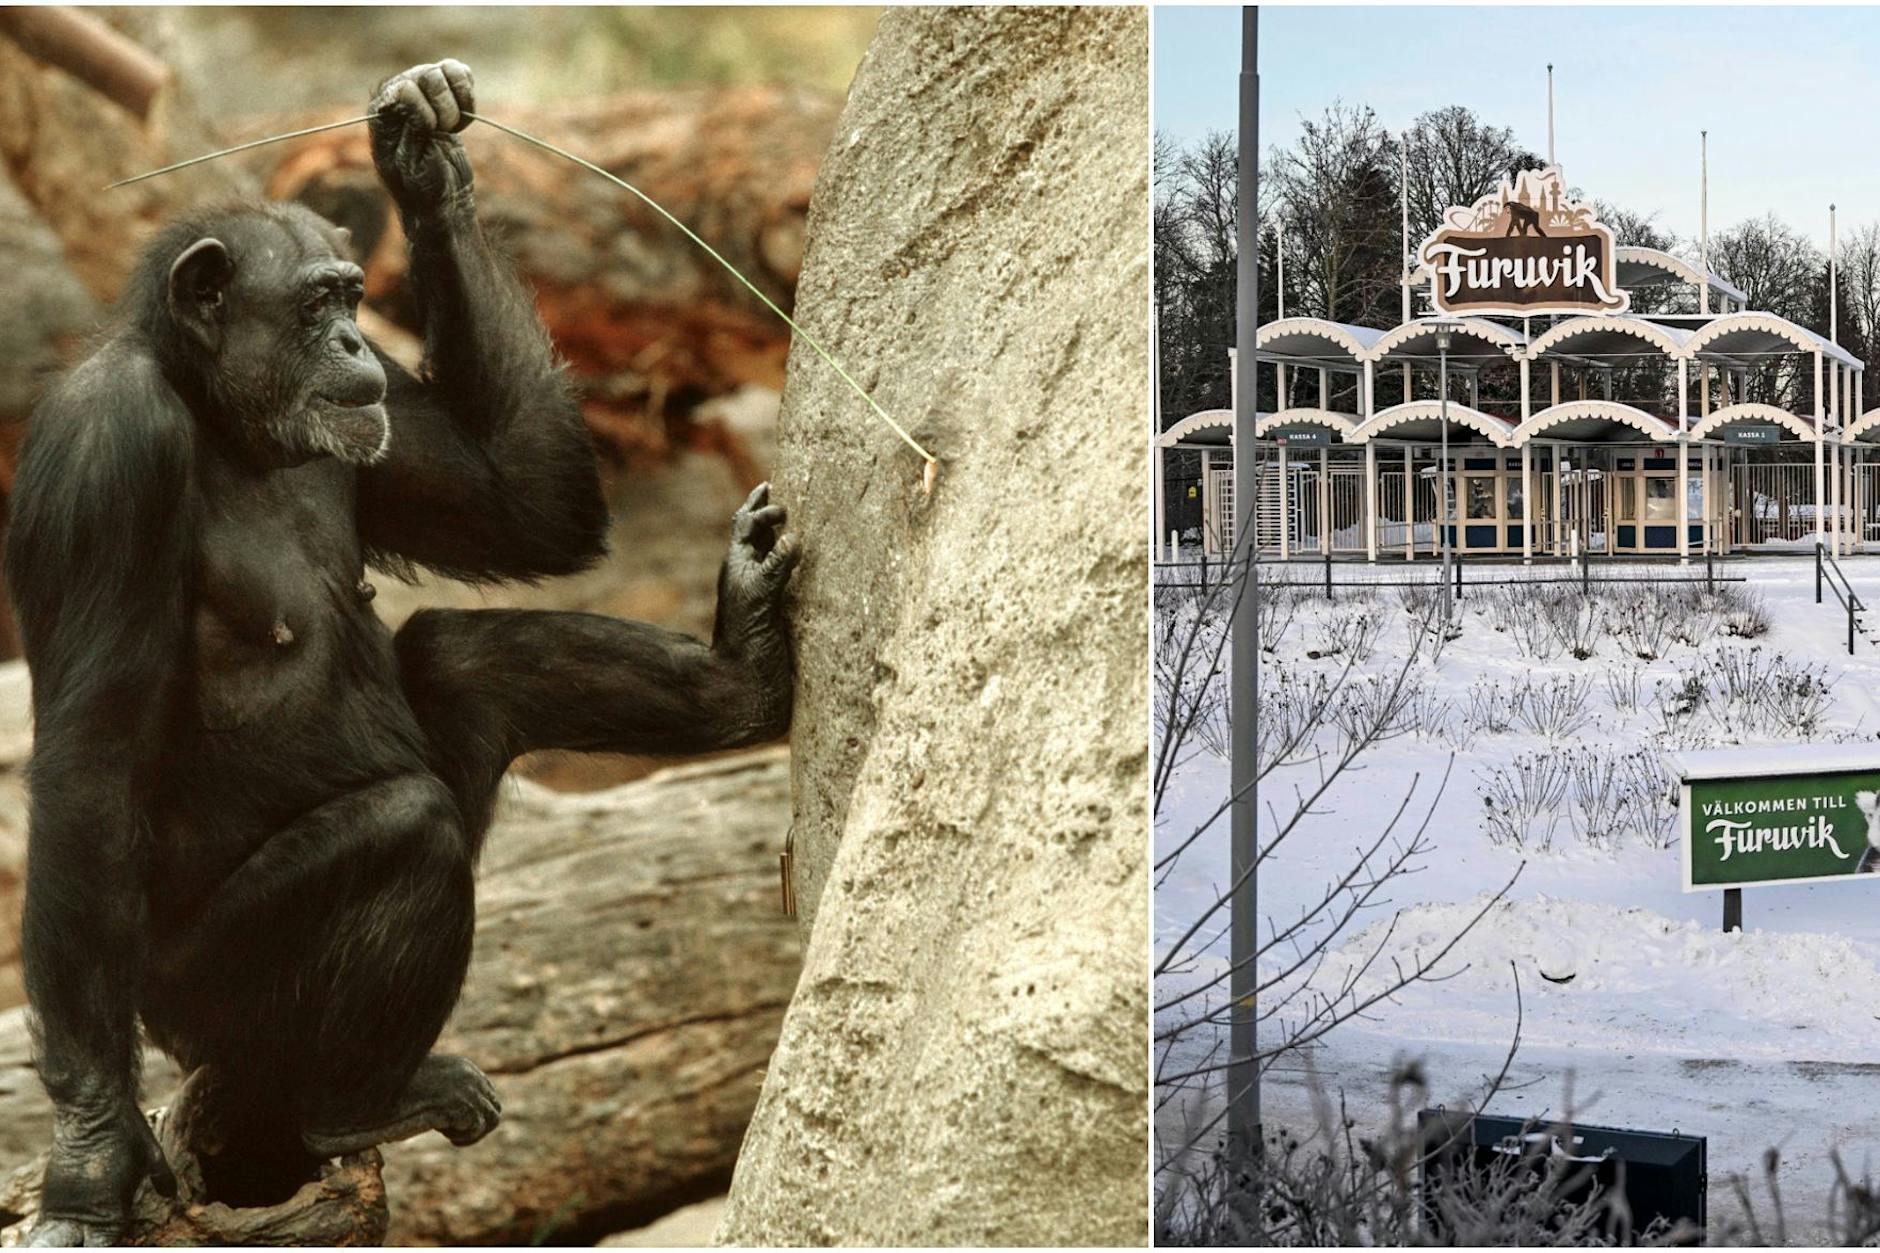 Grausam! Erschossene Schimpansen in Werbespot benutzt